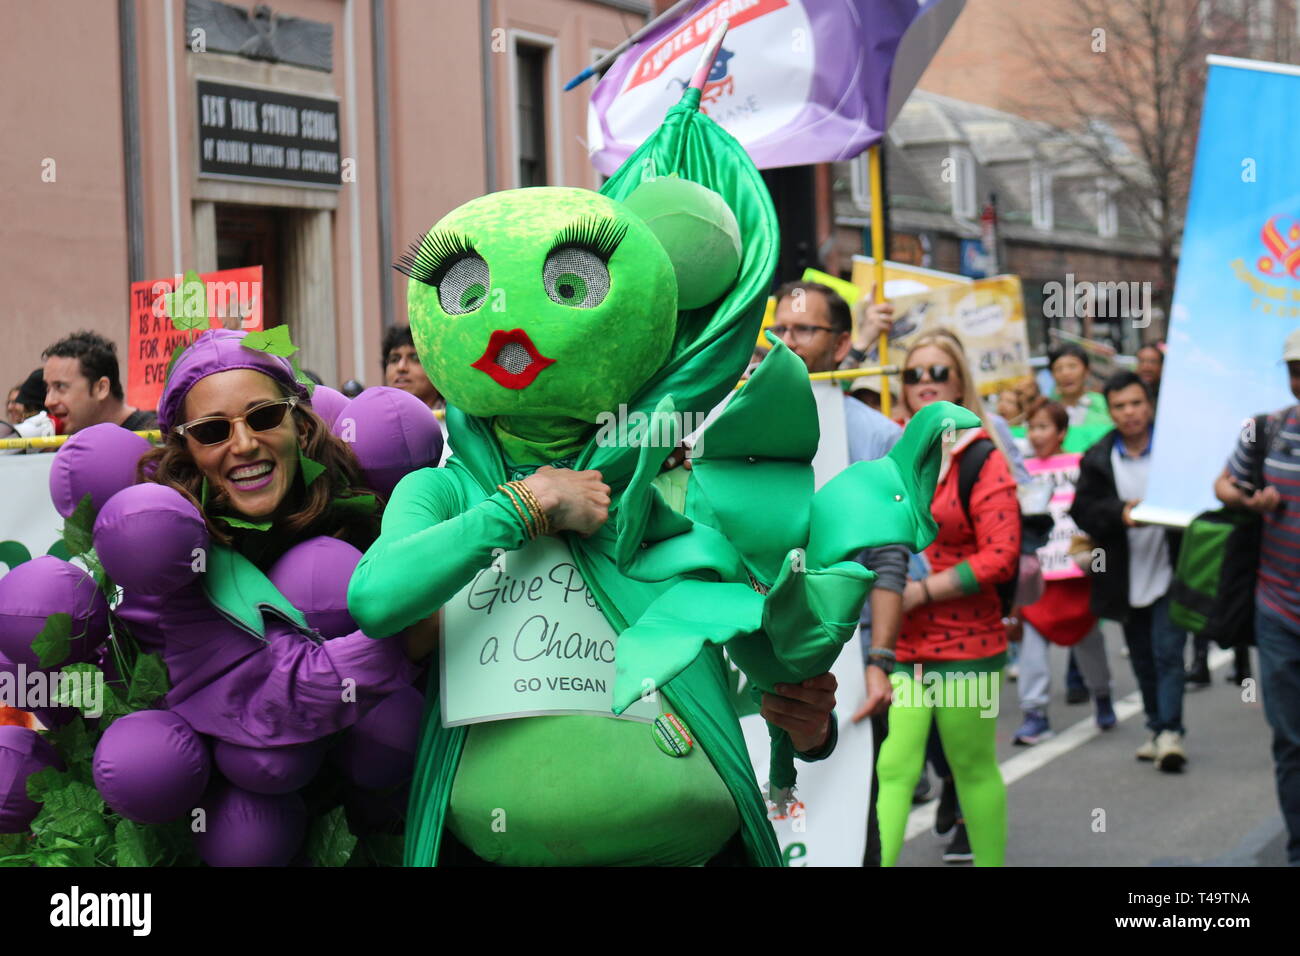 Teilnehmer gekleidet wie ein Tier gesehen, bei der 12. jährlichen Veggie Pride Parade marschieren. Die Parade feiert Veganismus und Übungen die erste änderung Rechte derjenigen, die Gewalt gegen andere Tiere ablehnen. Stockfoto